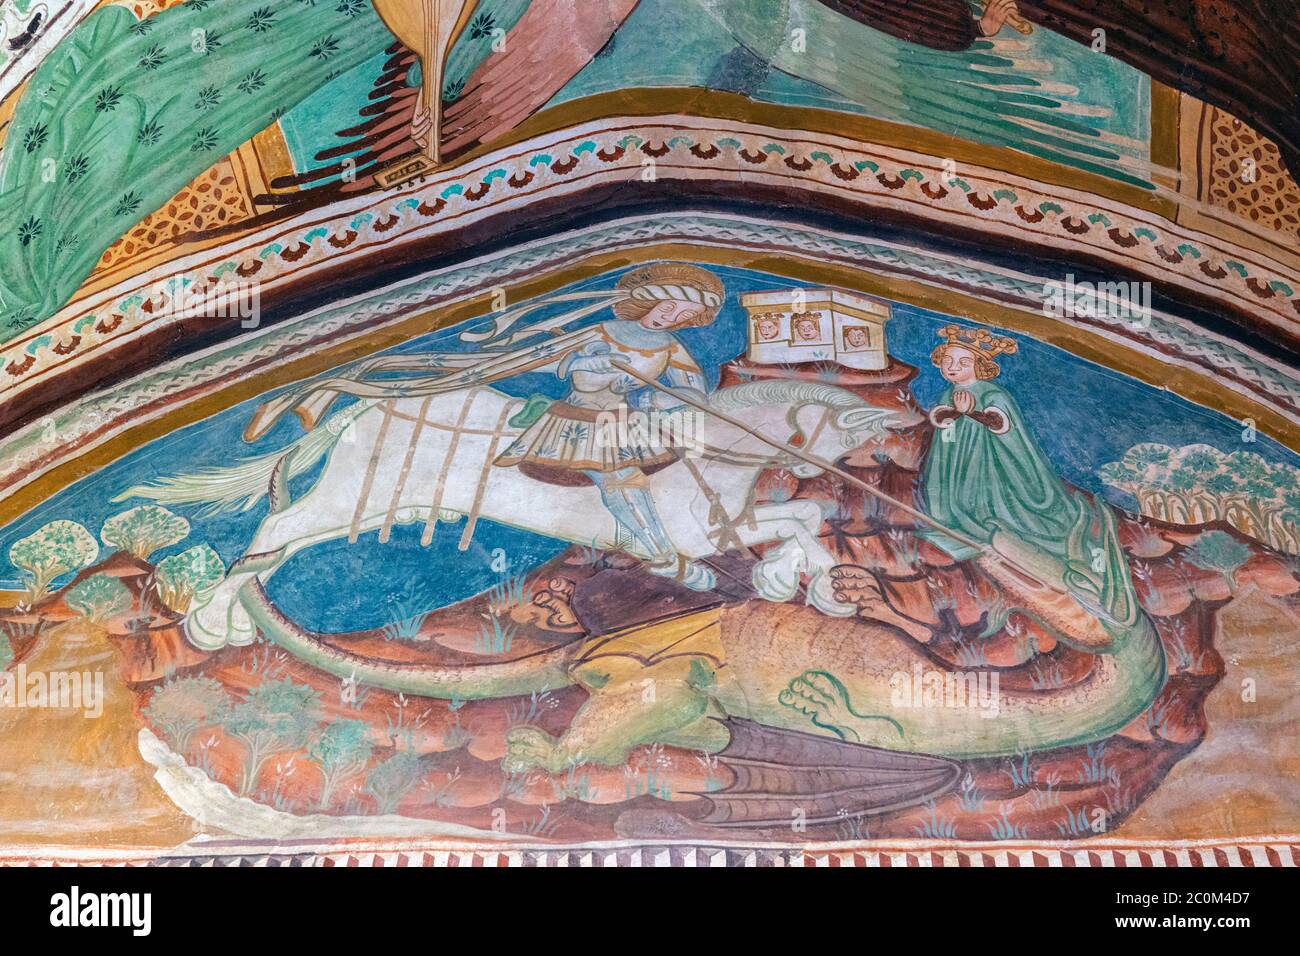 Fresko des Heiligen Georg, der den Drachen in der romanisch-gotischen Kirche des Heiligen Johannes des Täufers erschlugen hat, die um 1100 am Ufer des Bohinjer Sees gebaut wurde Stockfoto